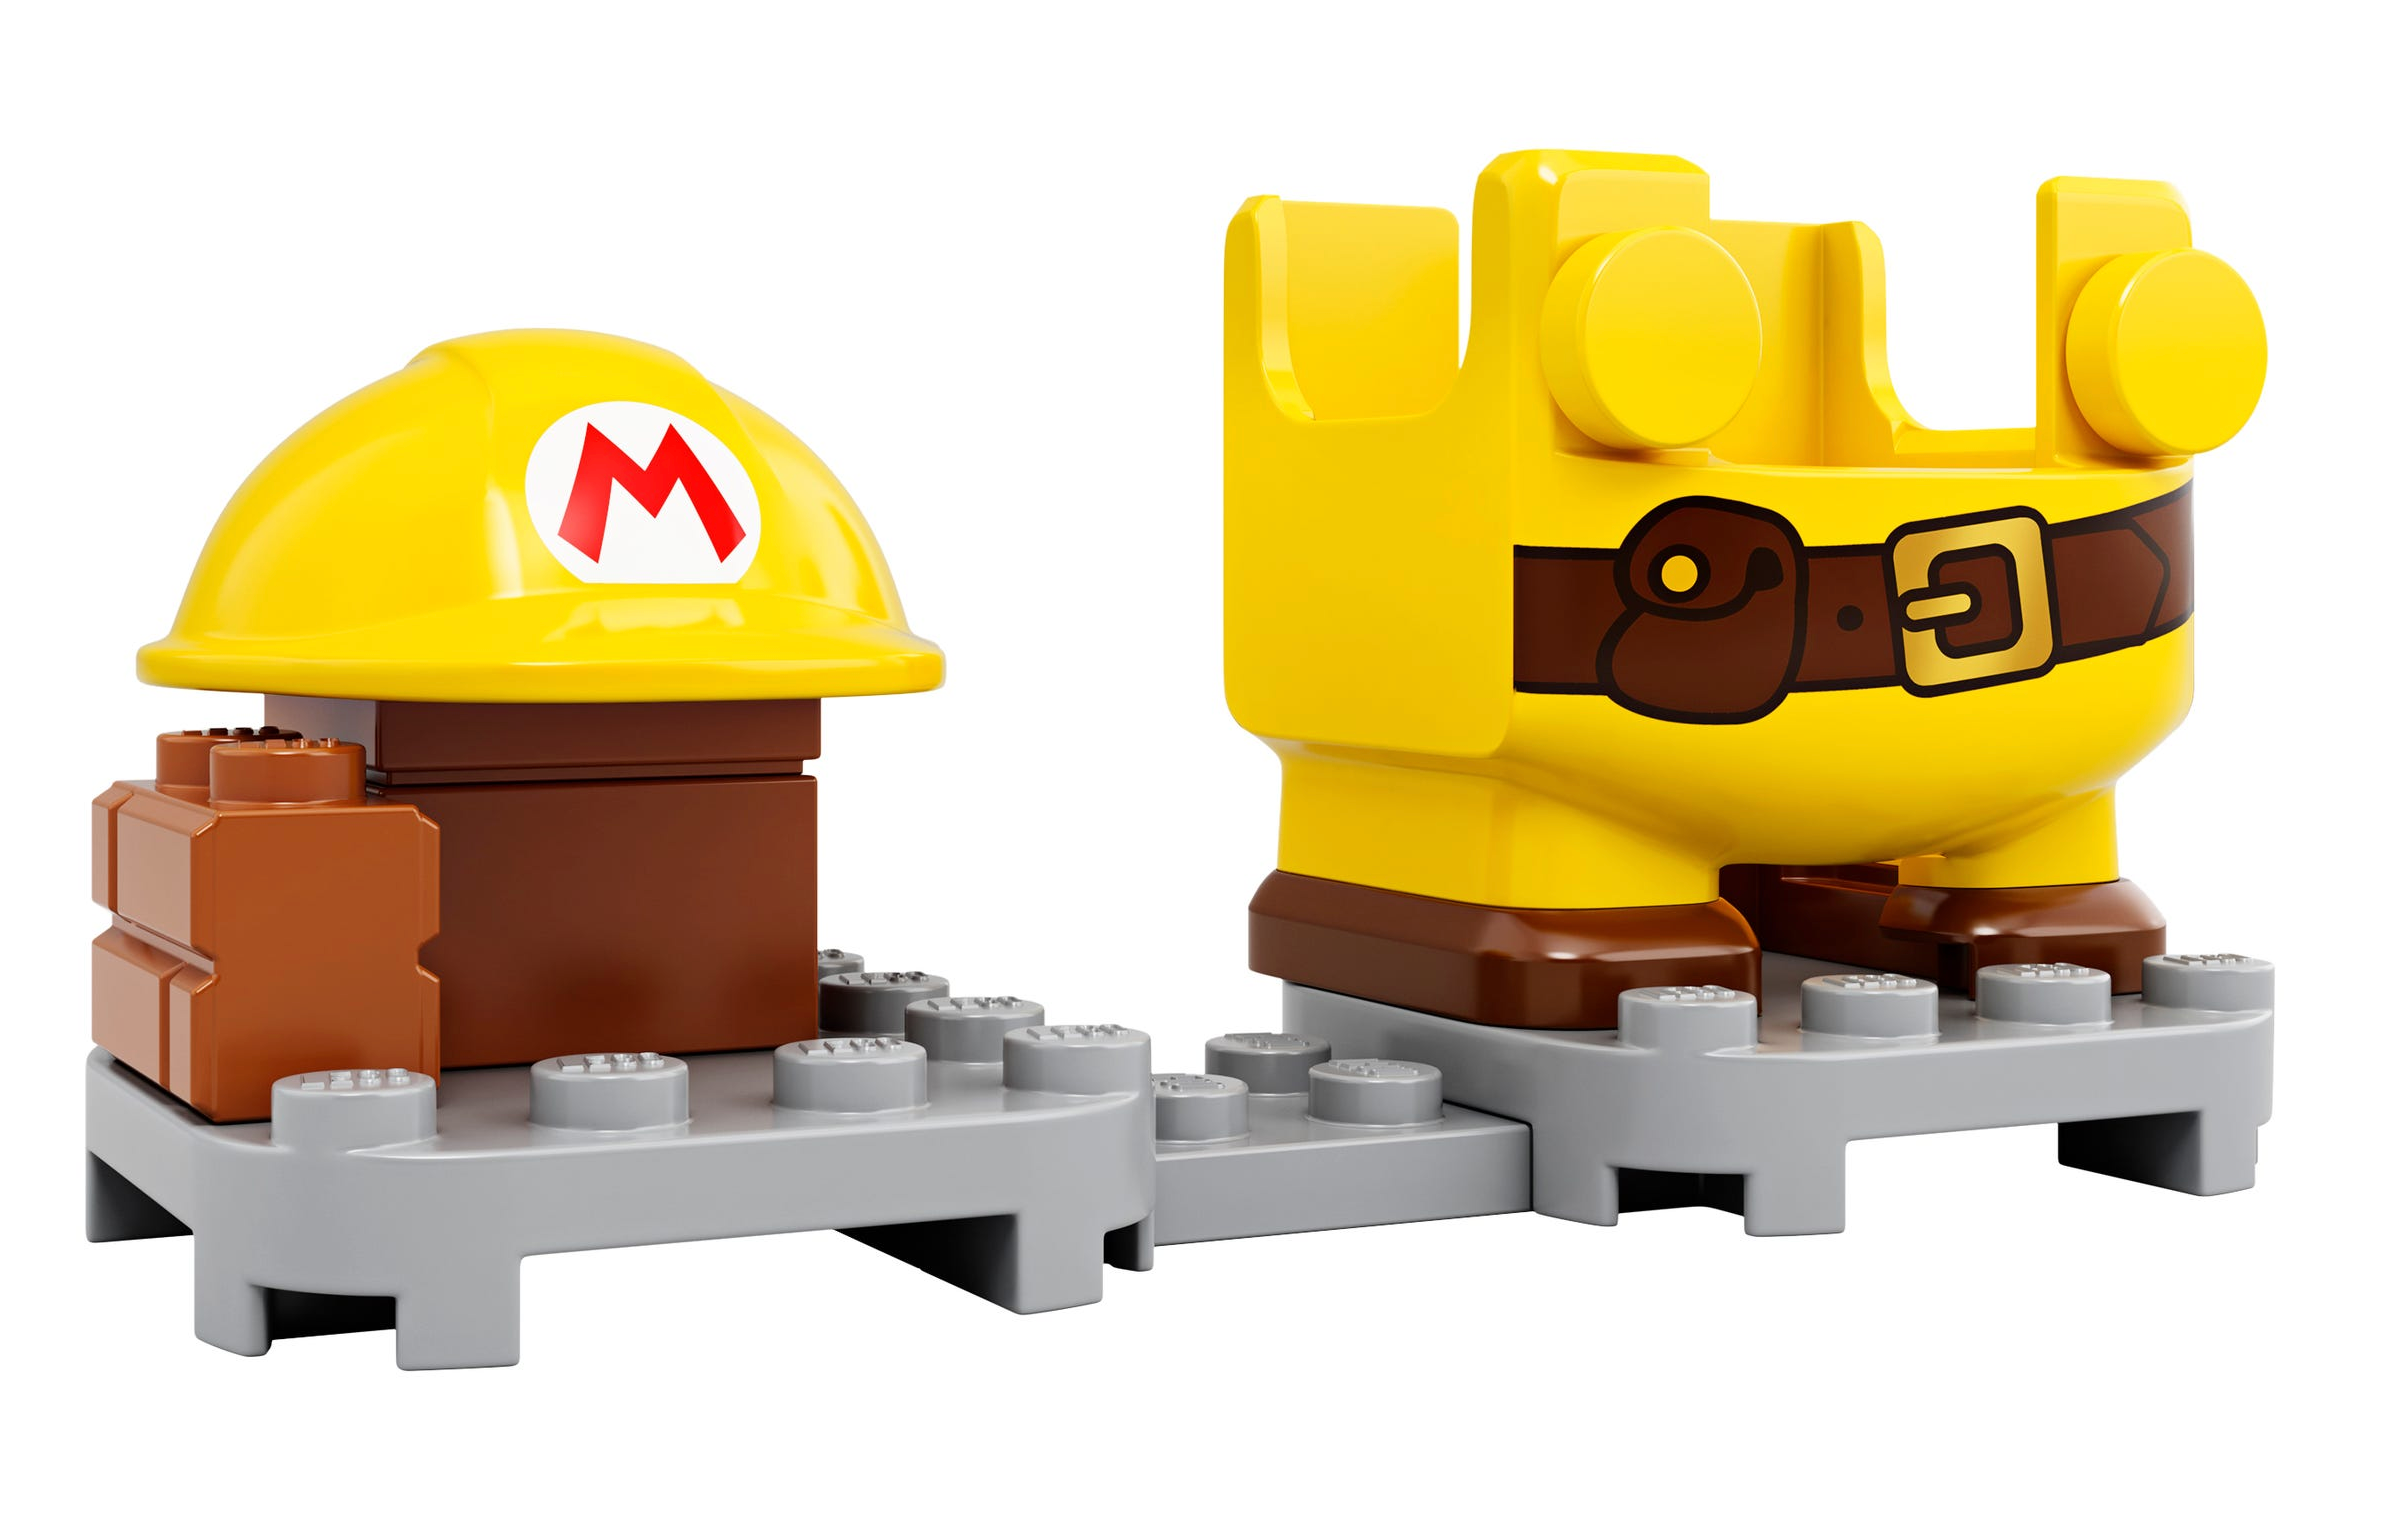 LEGO: Super Mario - Builder Mario Power-Up Pack